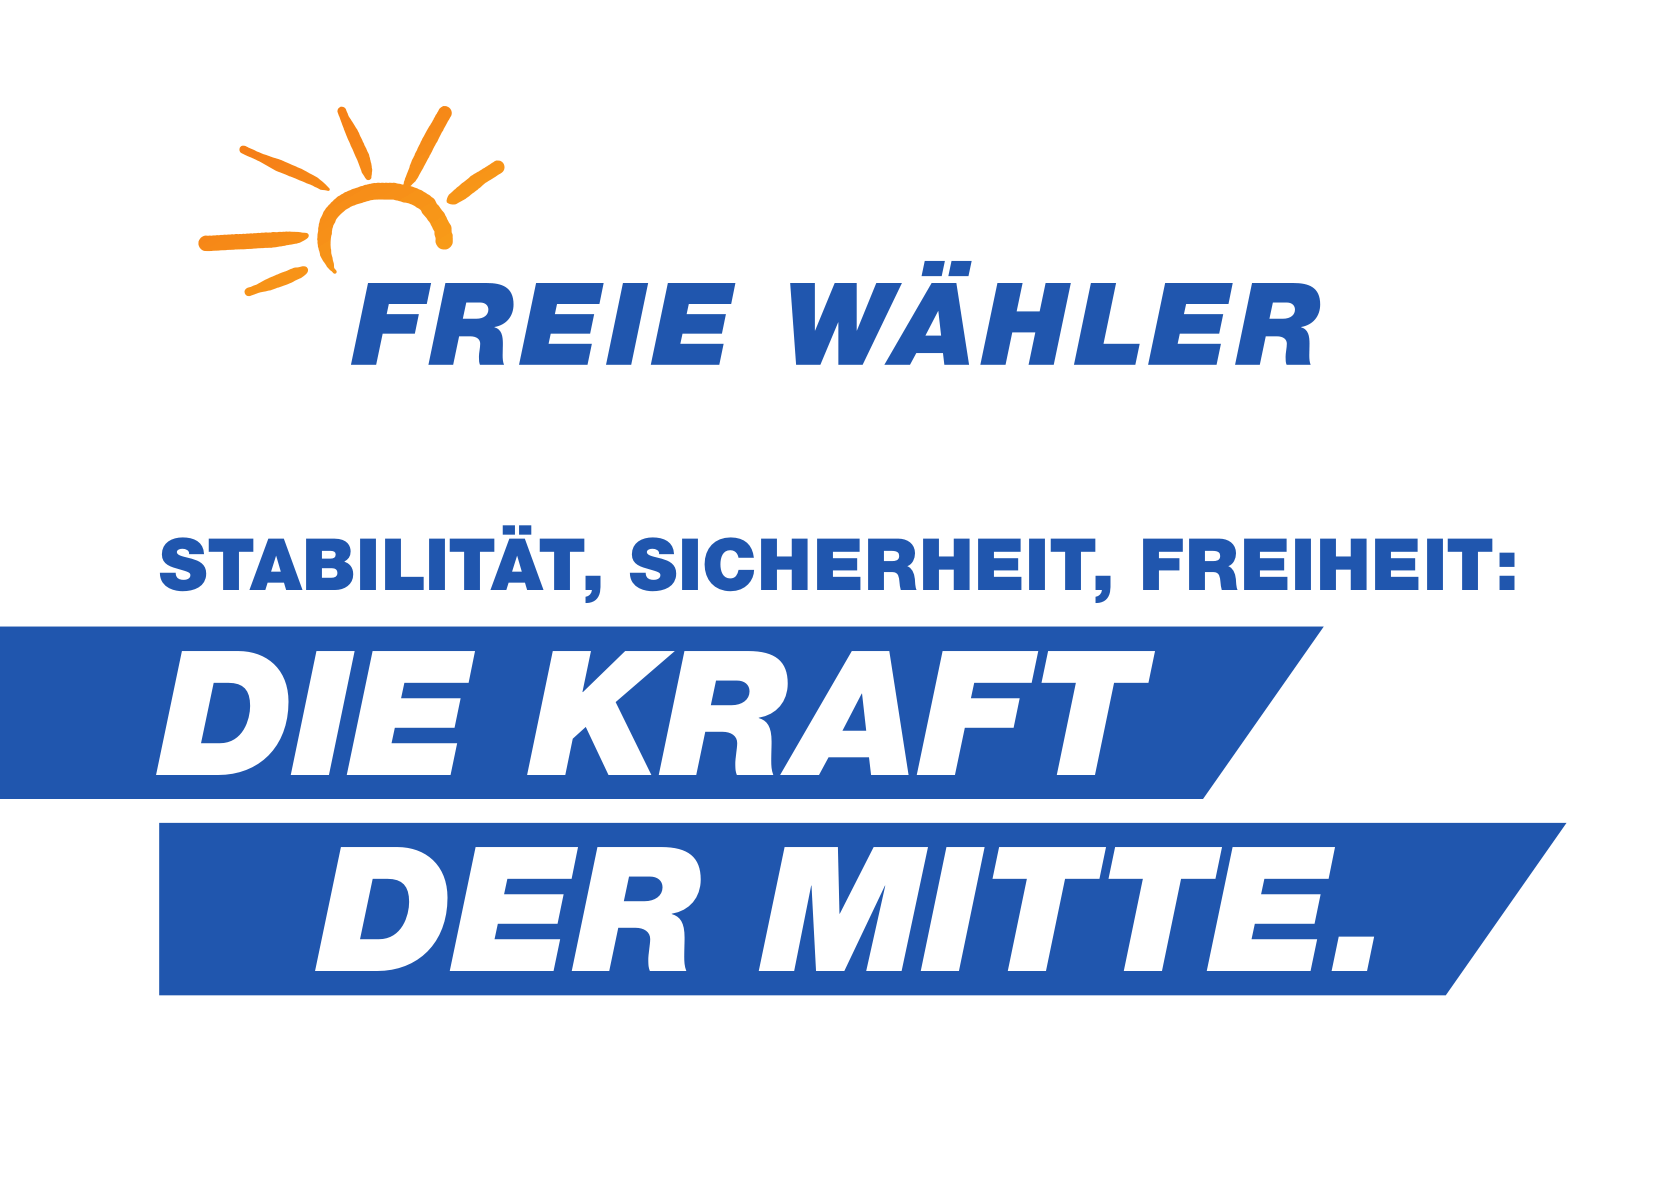 Wahlprogramm der Freien Wähler (FW) für die Bundestagswahl 2021